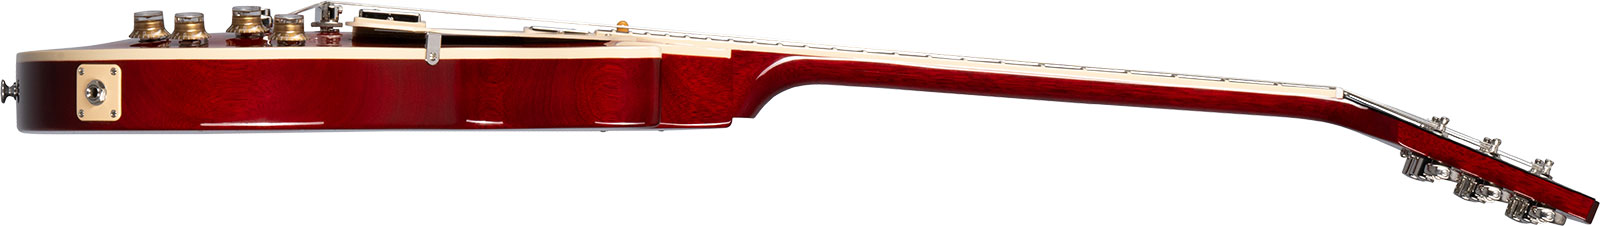 Gibson Les Paul Standard 60s Figured Original 2h Ht Rw - 60s Cherry - Enkel gesneden elektrische gitaar - Variation 2